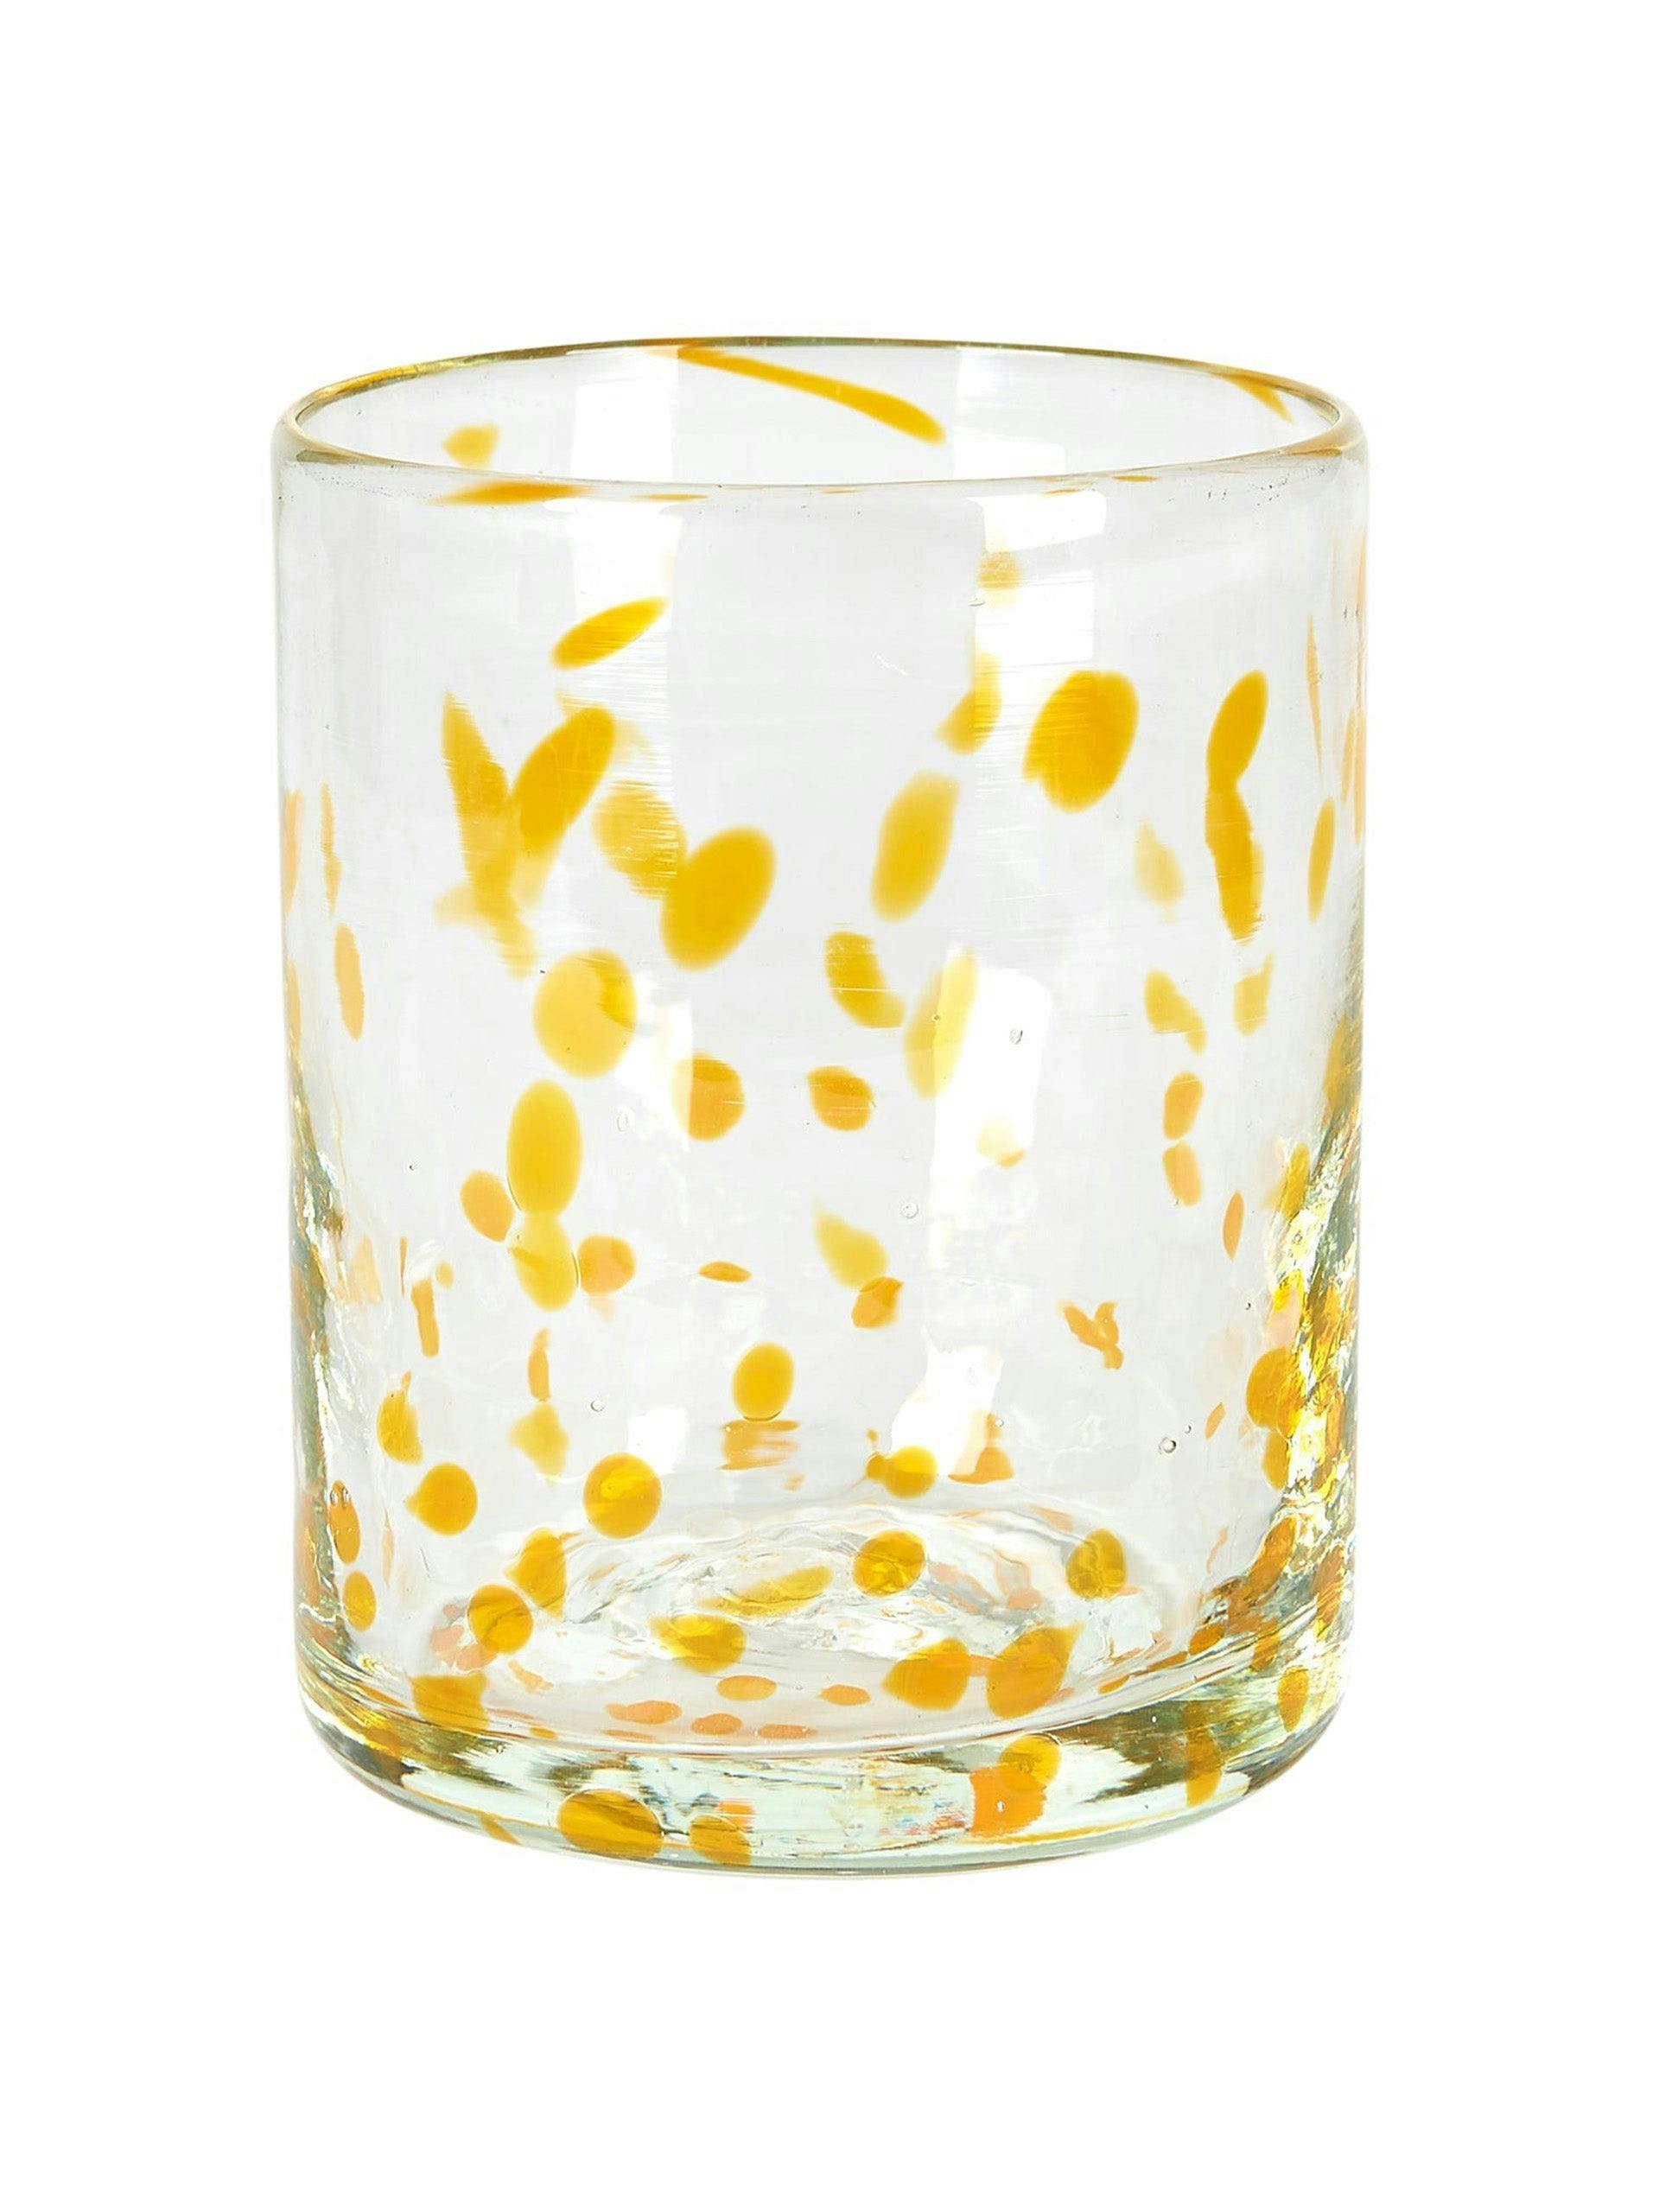 Honey yellow confetti Murano glass tumbler